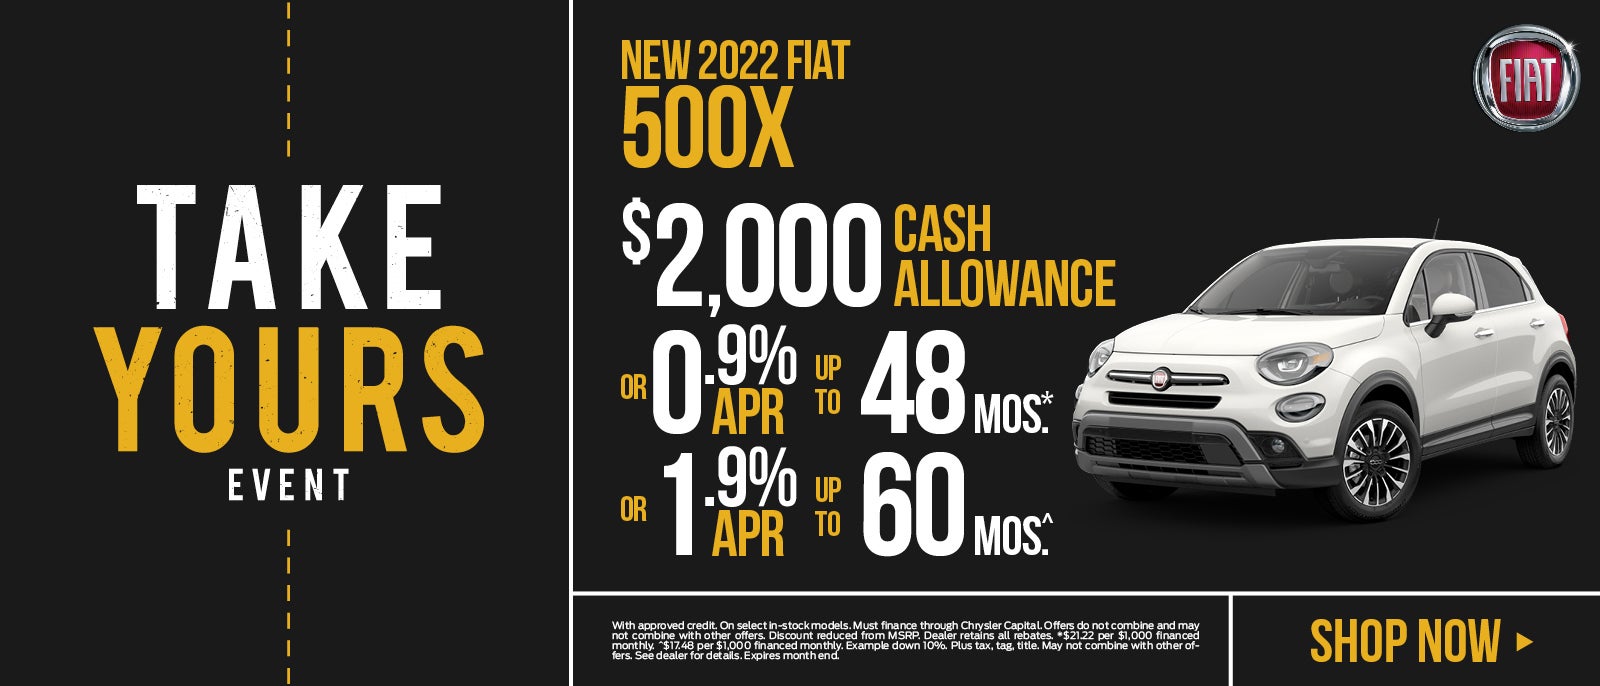 New 2022 Fiat 500X